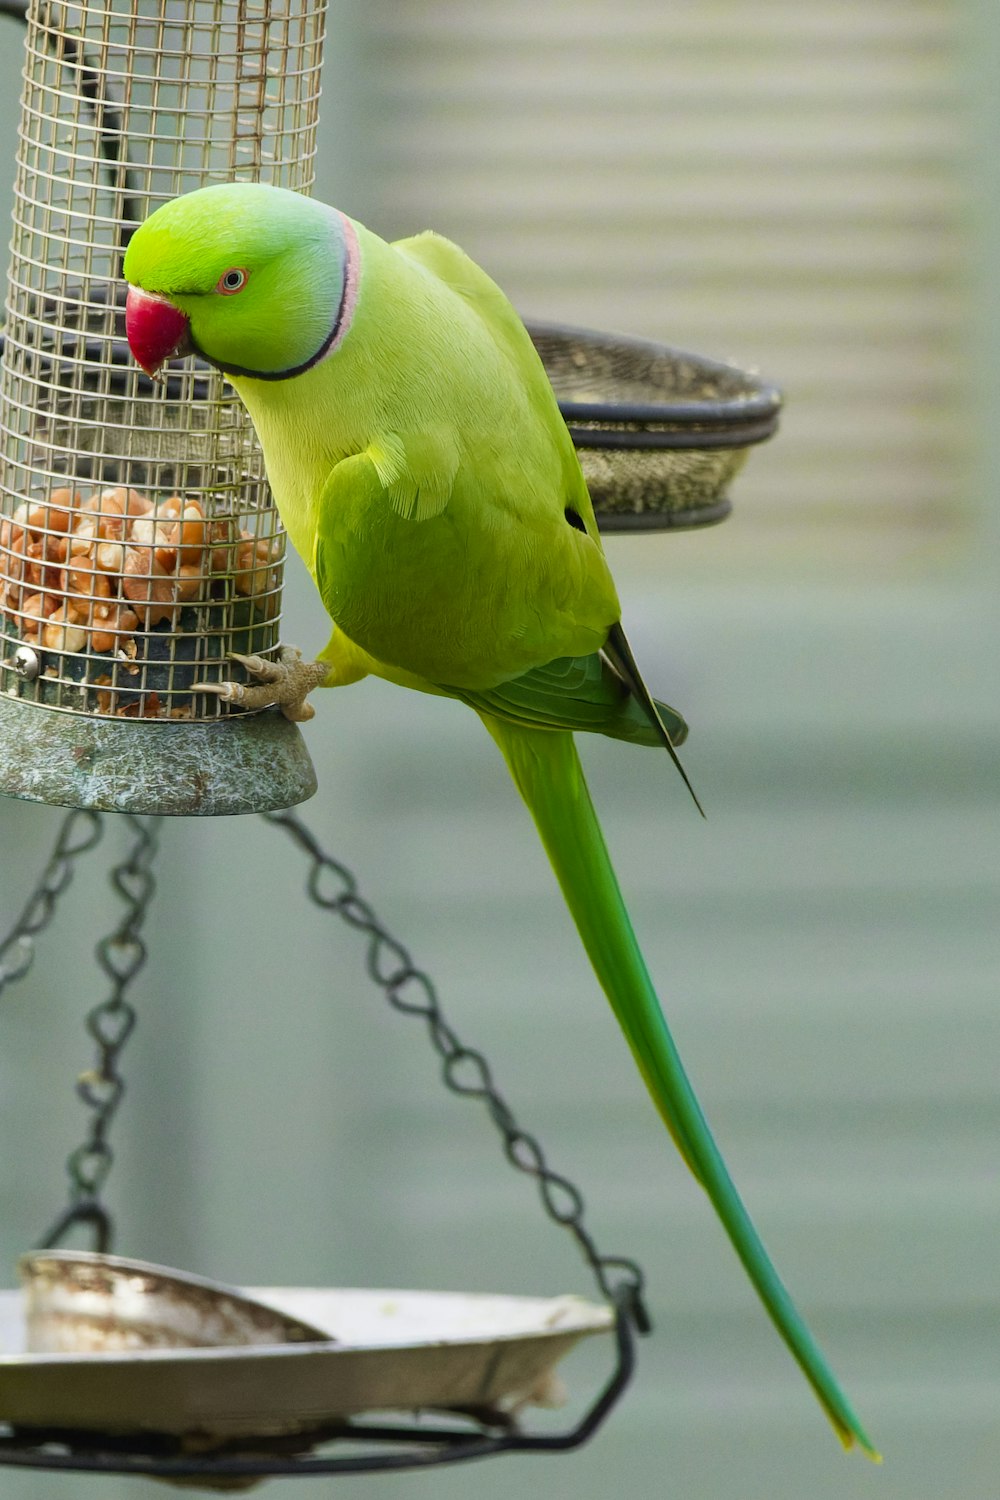 a green bird eating from a bird feeder